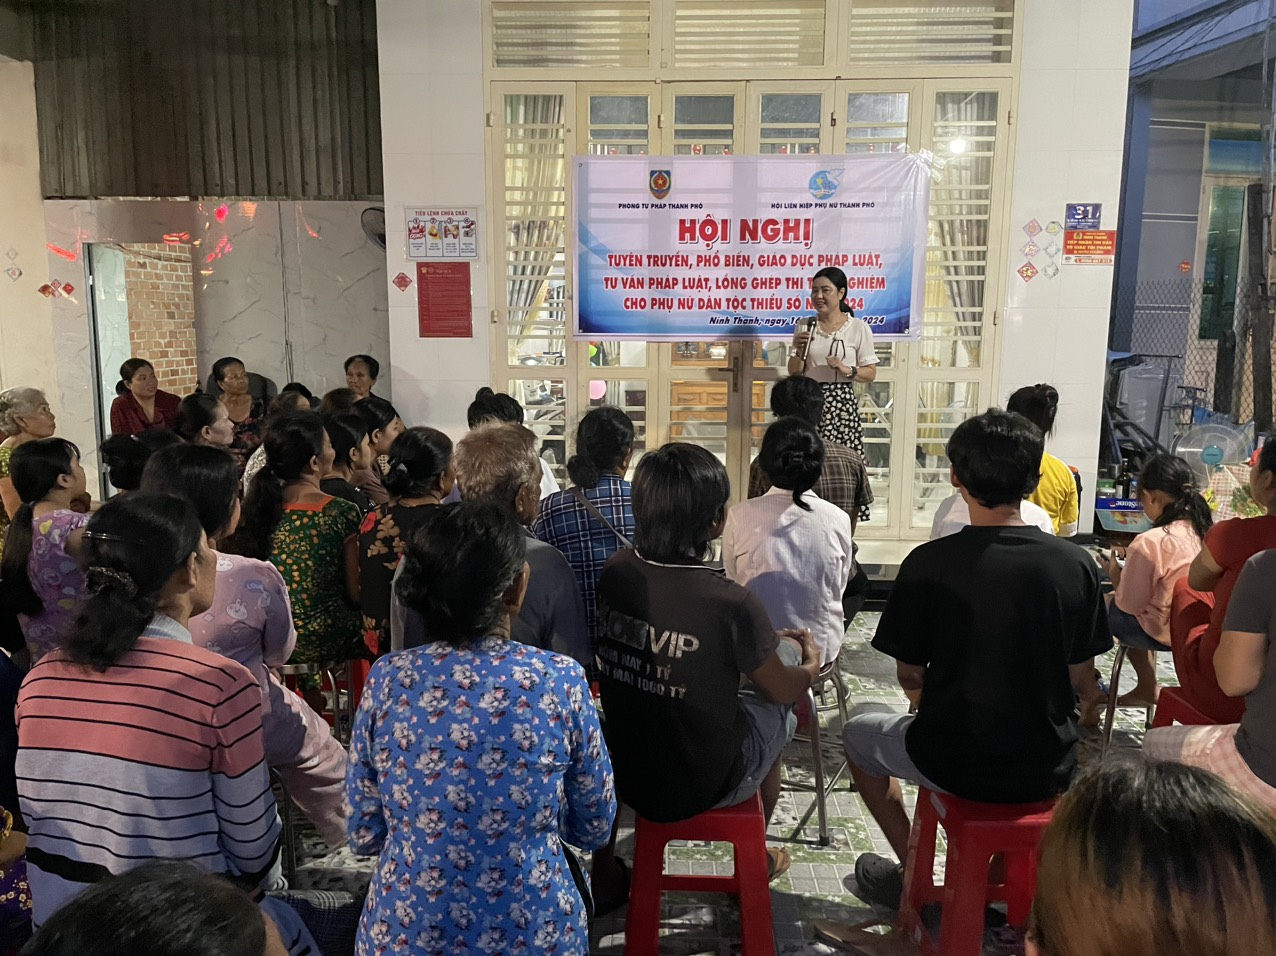 Thành phố Tây Ninh tổ chức hội nghị tuyên truyền, phổ biến, giáo dục pháp luật,  tư vấn pháp luật lồng ghép thi tìm hiểu pháp luật cho phụ nữ là người dân tộc thiểu số